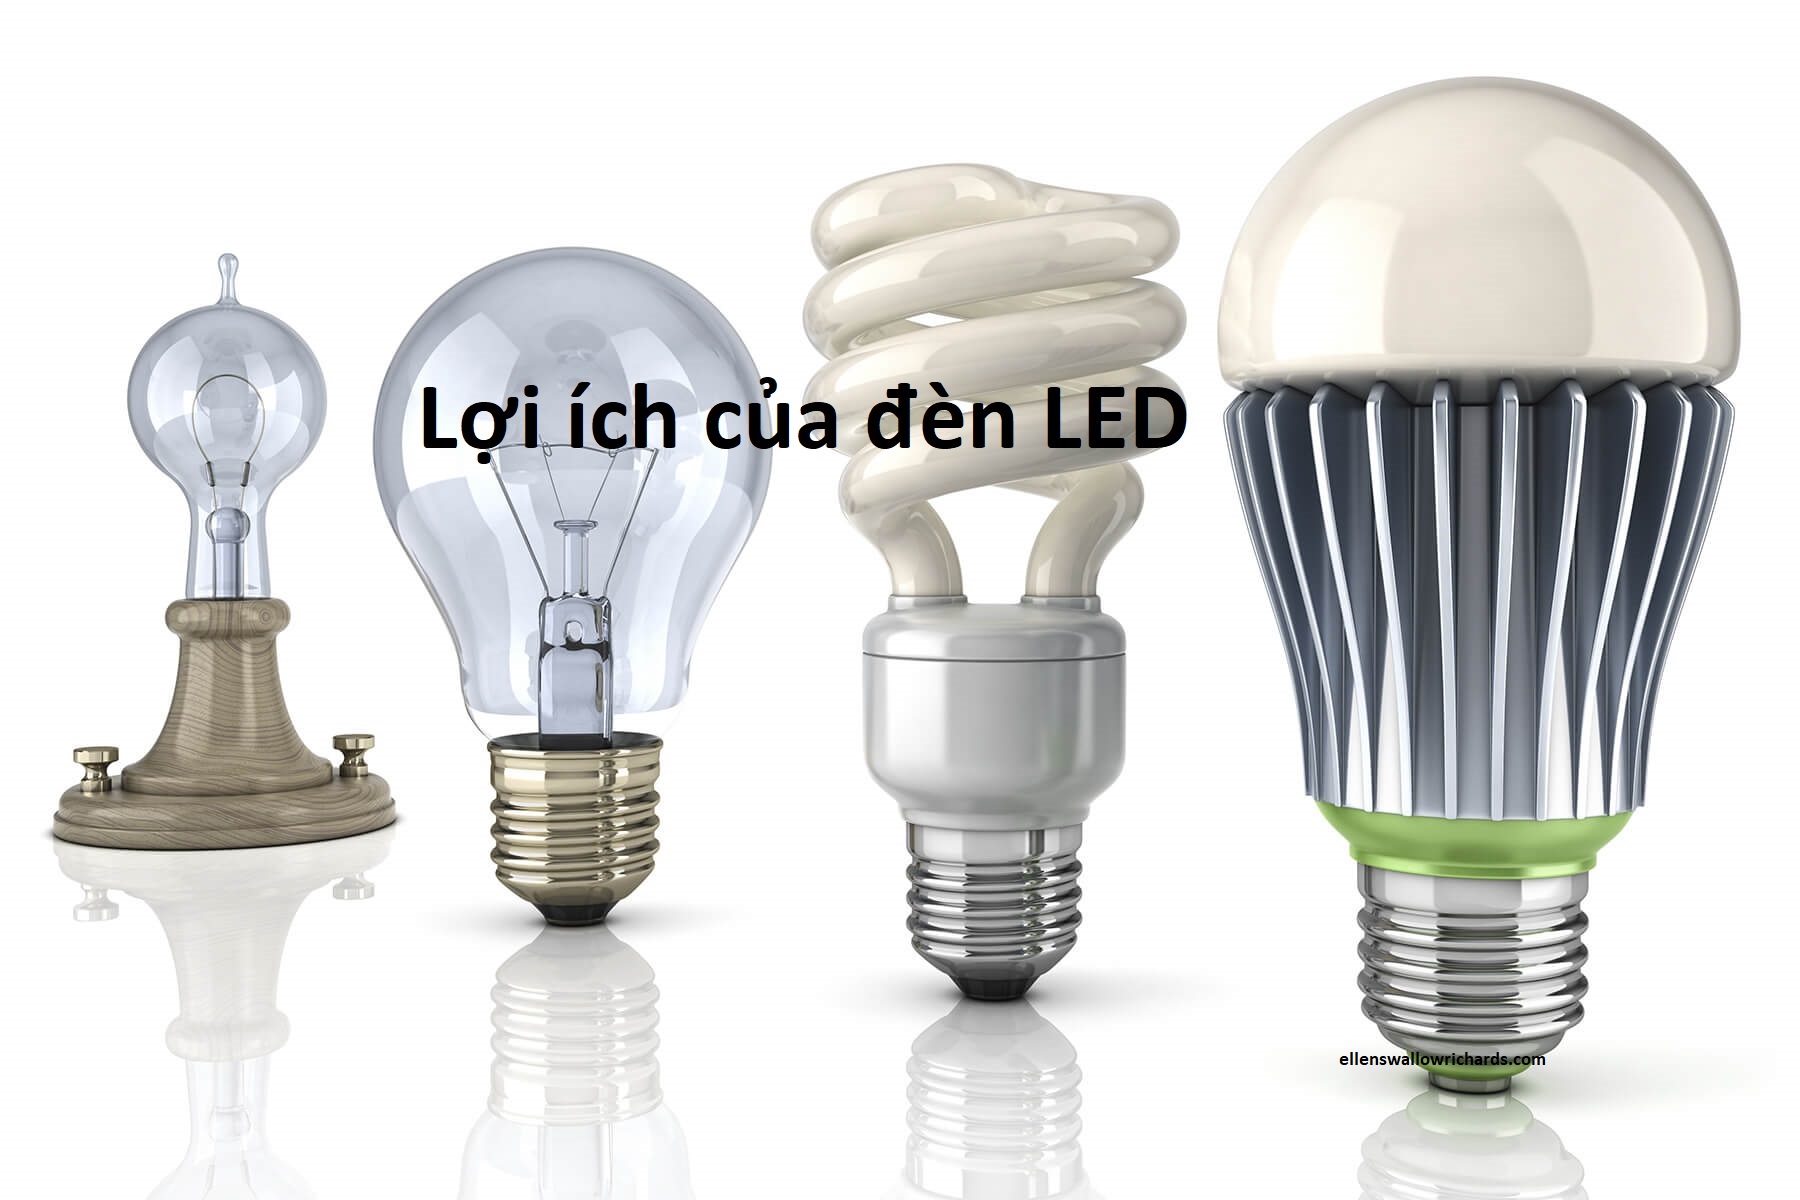 Lợi ích của đèn LED đem lại là gì?